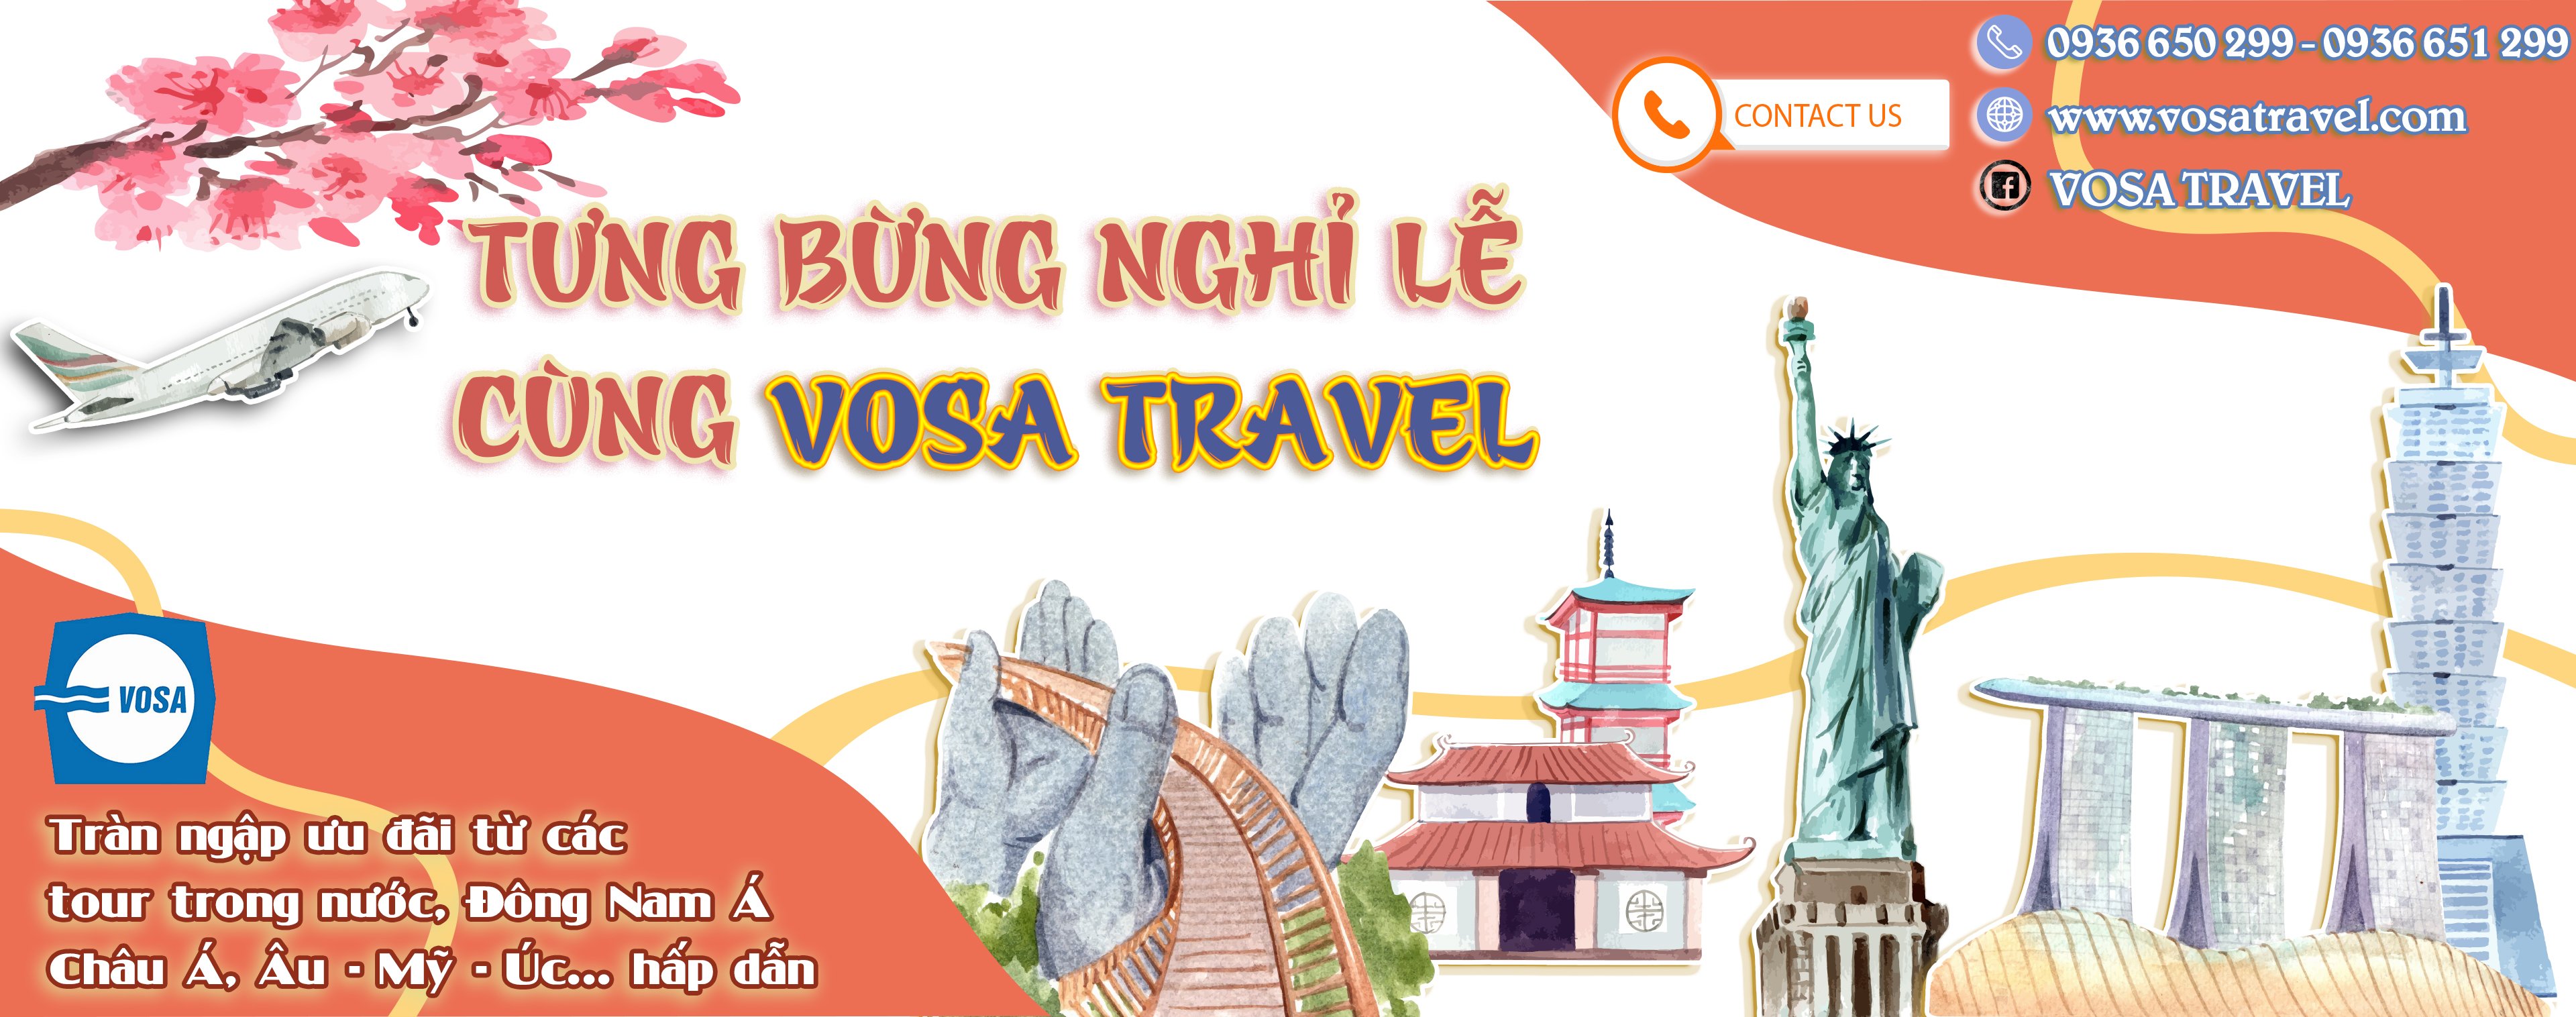 Du lịch Tết Vosa Travel